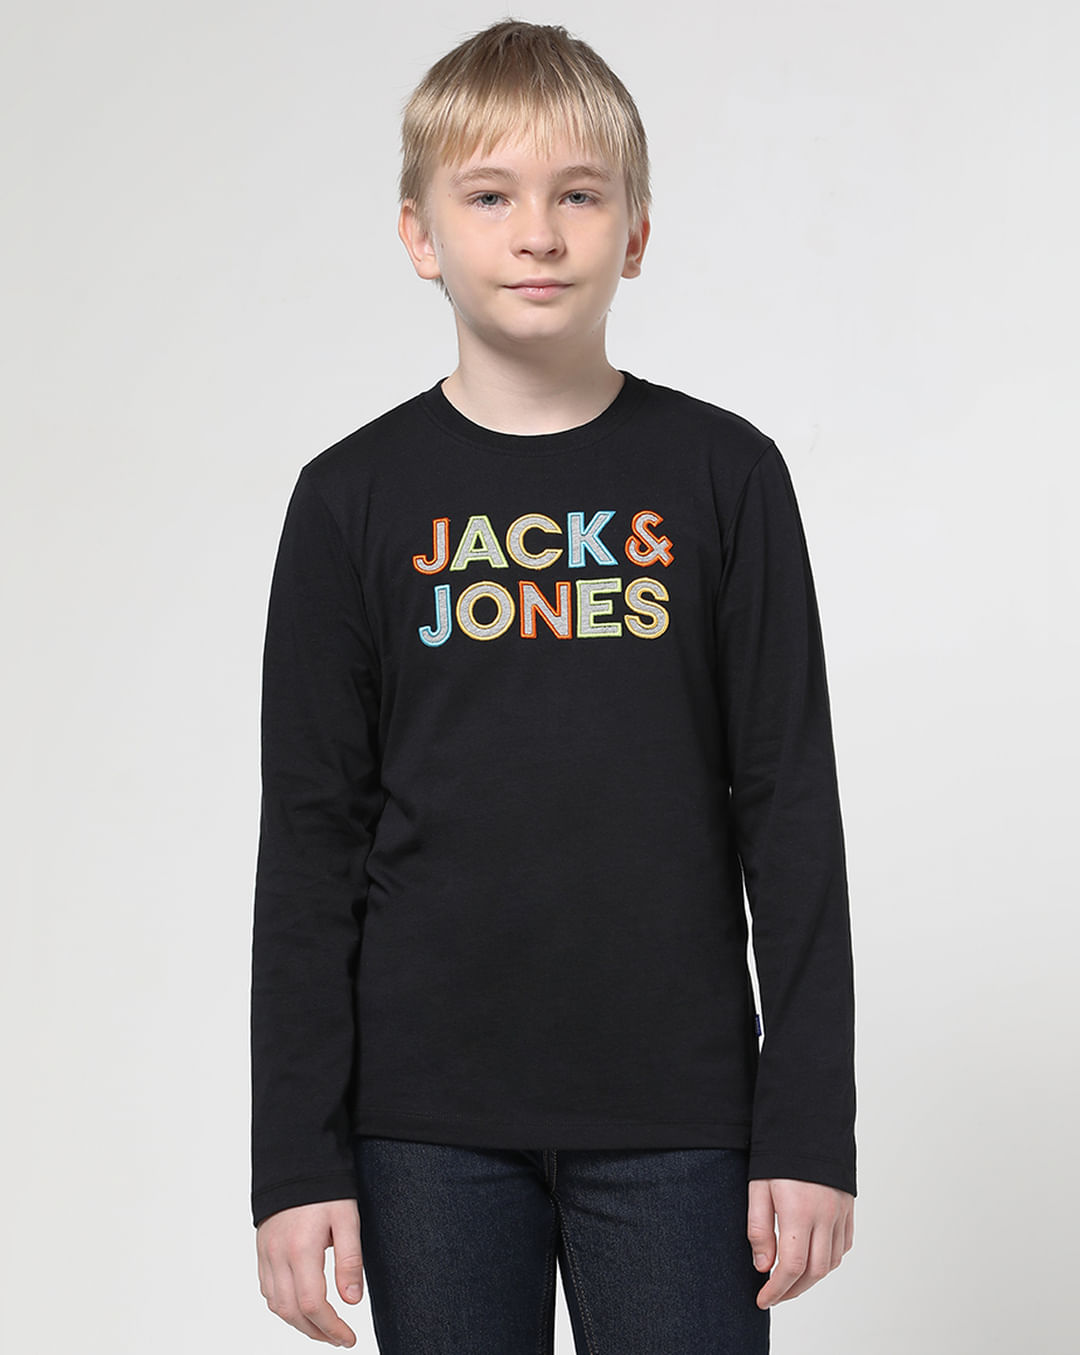 Jack & Jones Originals big chest logo t-shirt